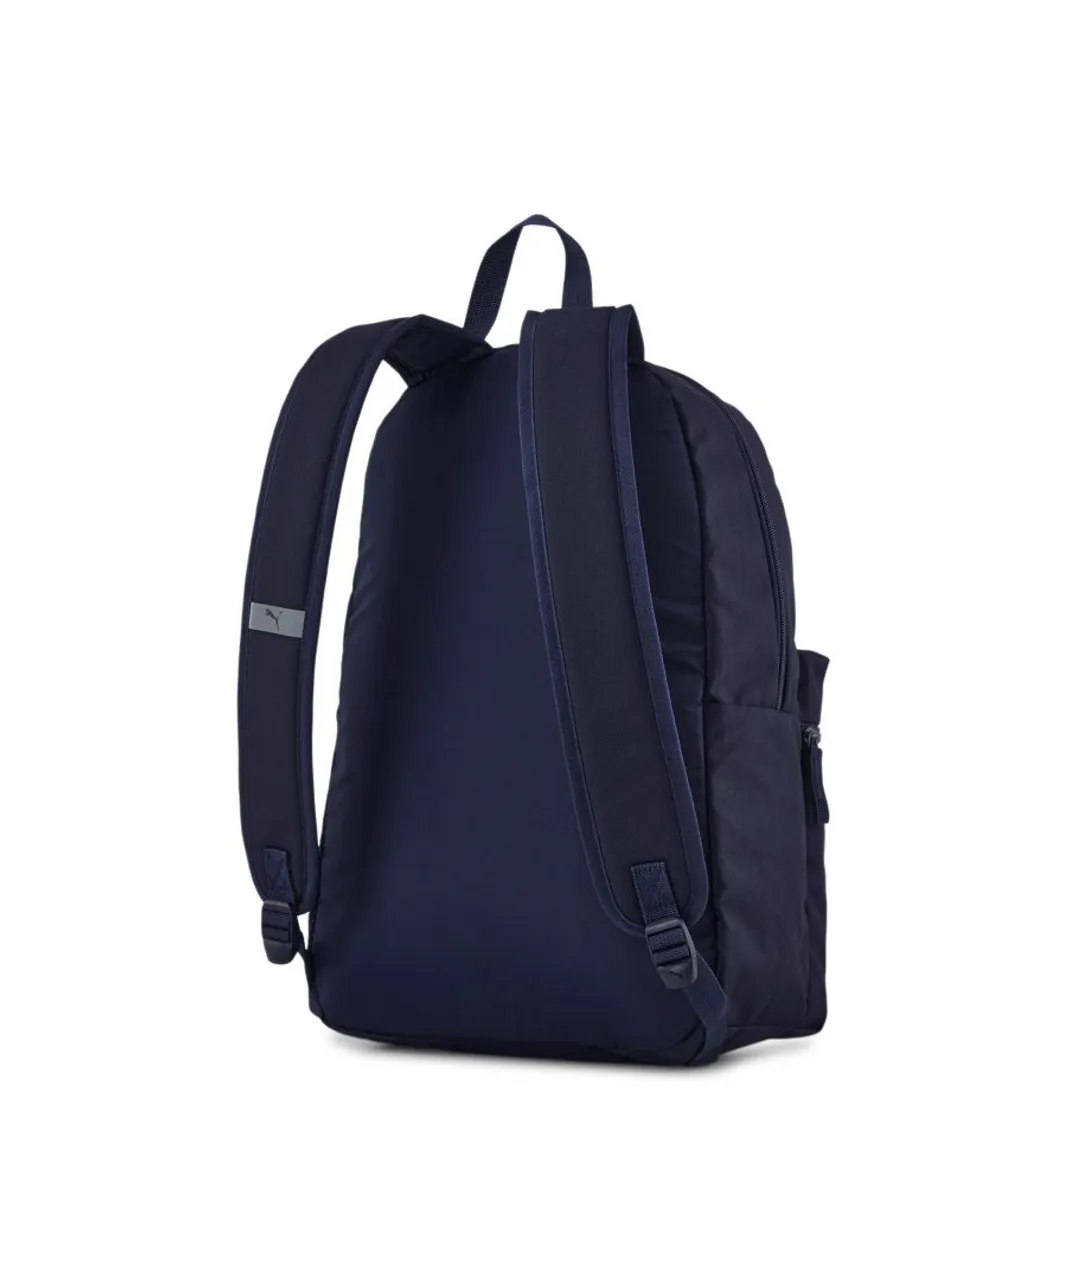 Puma Unisex Phase Backpack - Blue - One Size